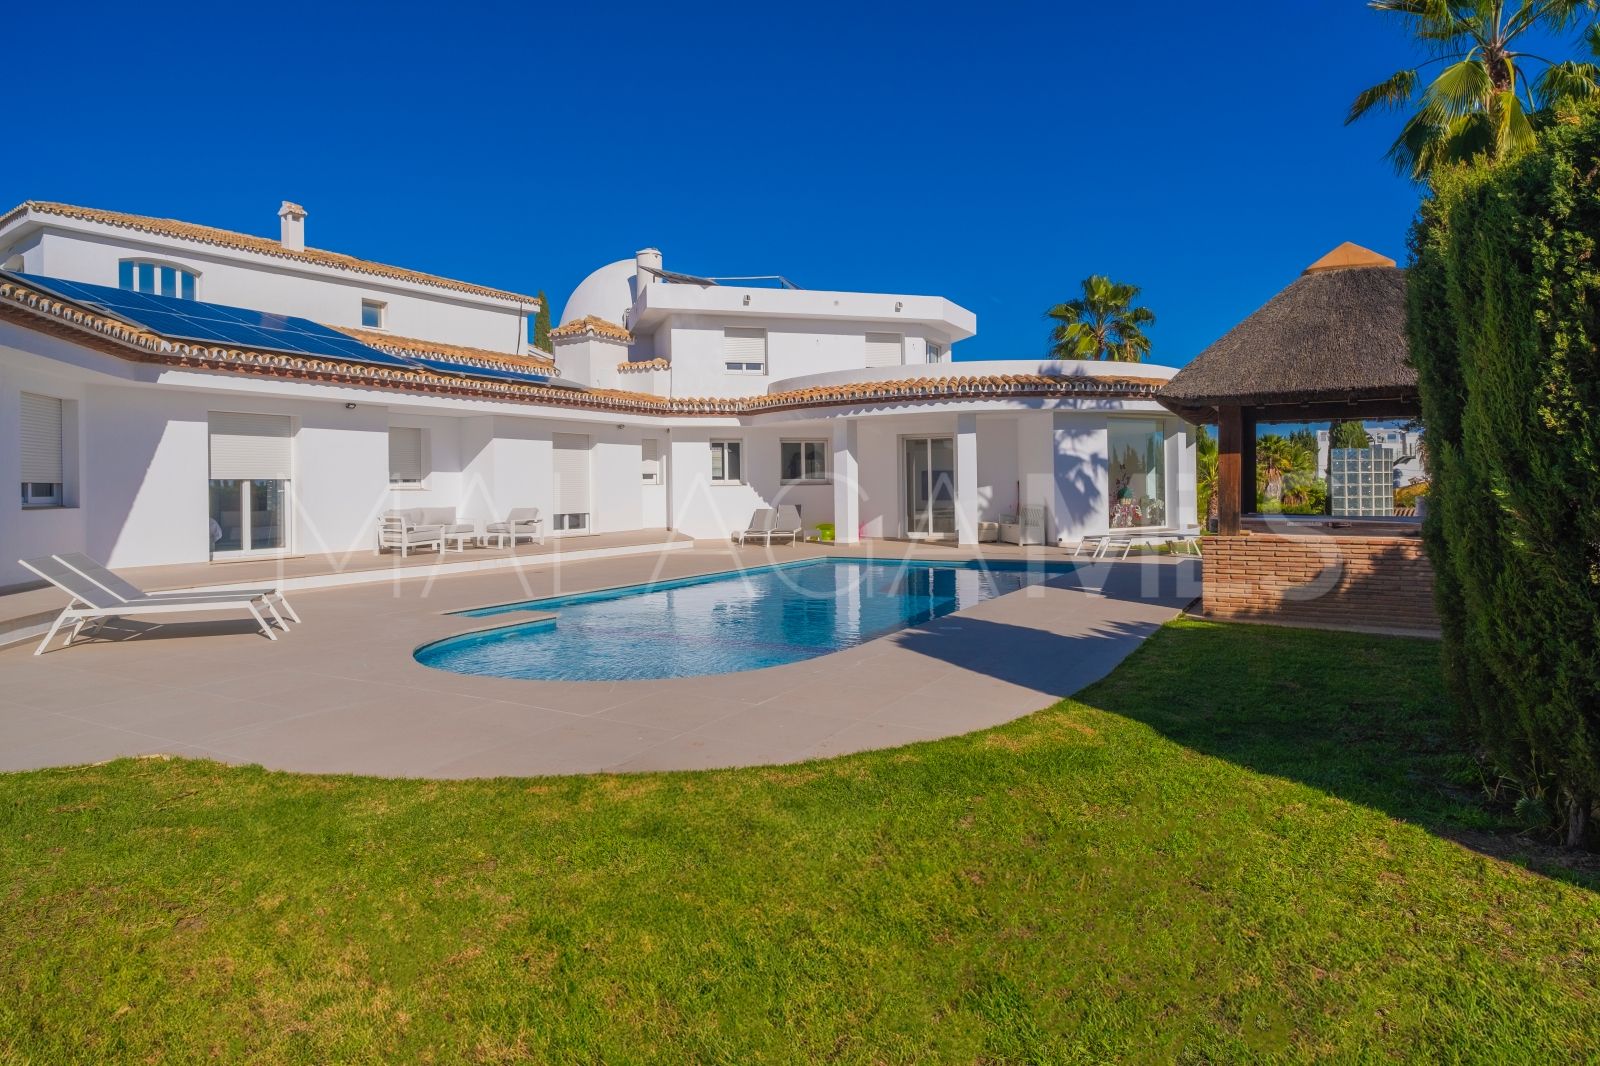 El Paraiso villa for sale